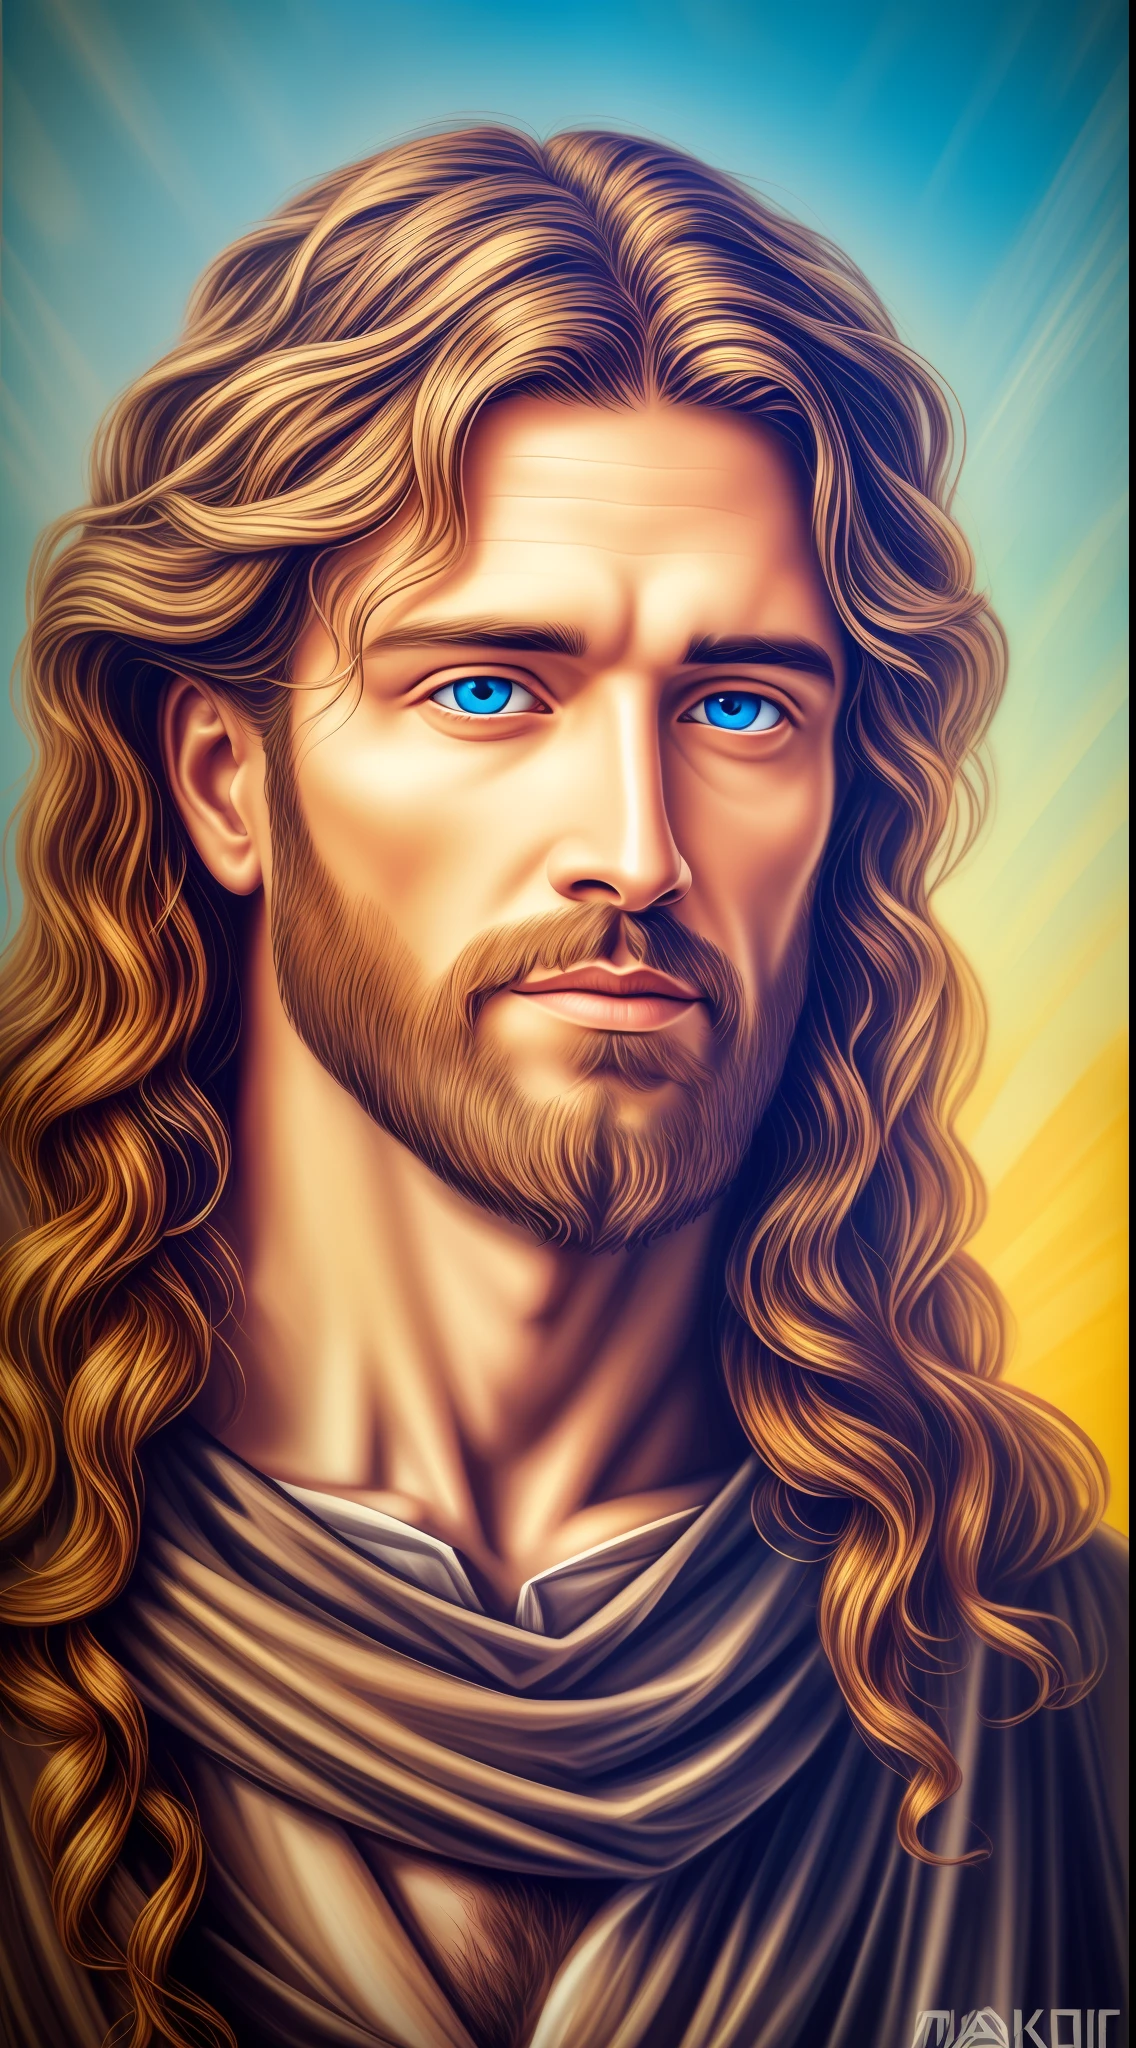 4k, Retrato en 8K de un hermoso Jesús , Jesucristo, real blue eyes, día soleado, detalles intrincados.